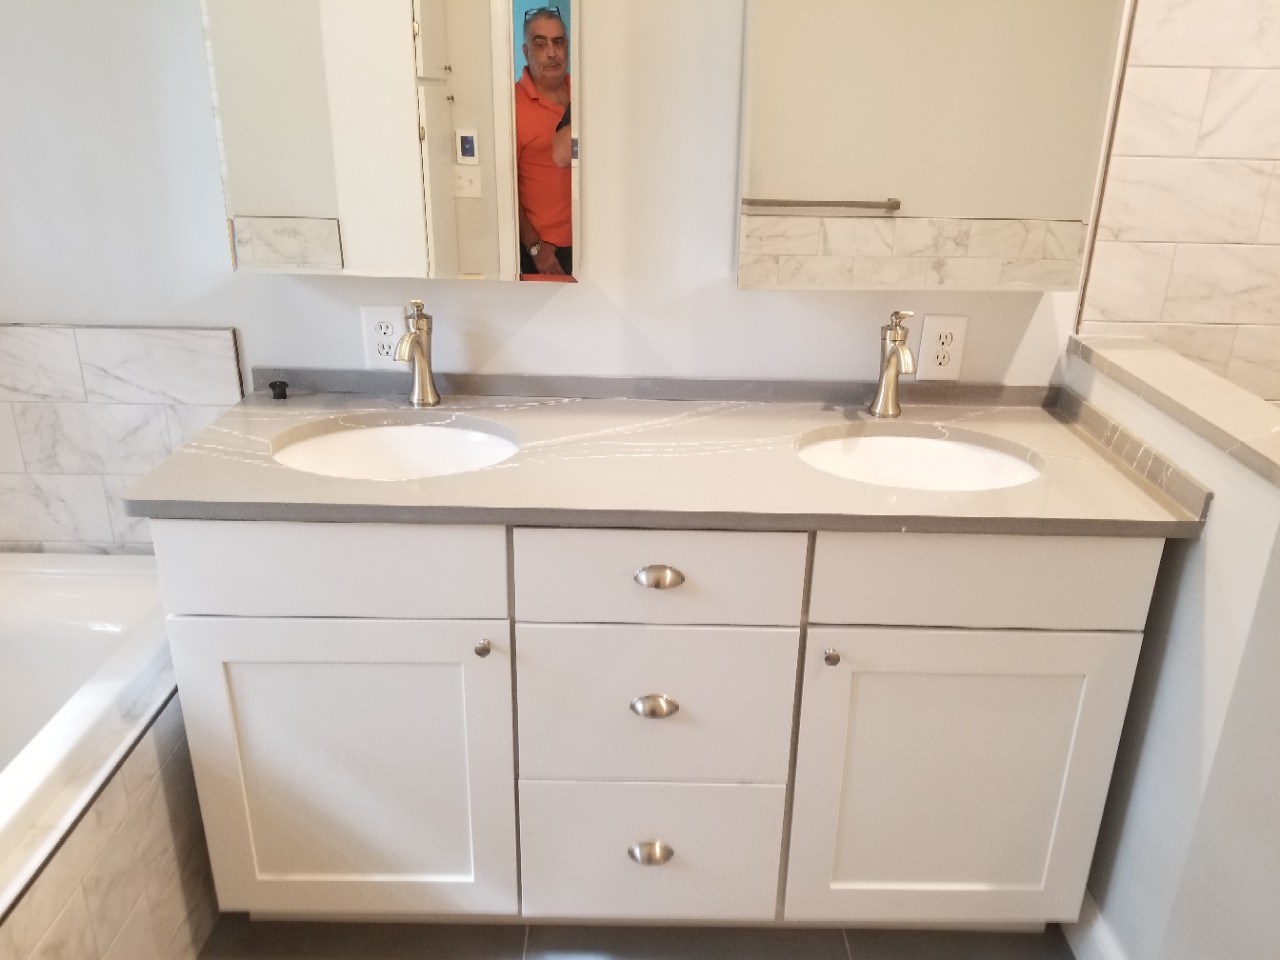 Middletown bathroom remodeling